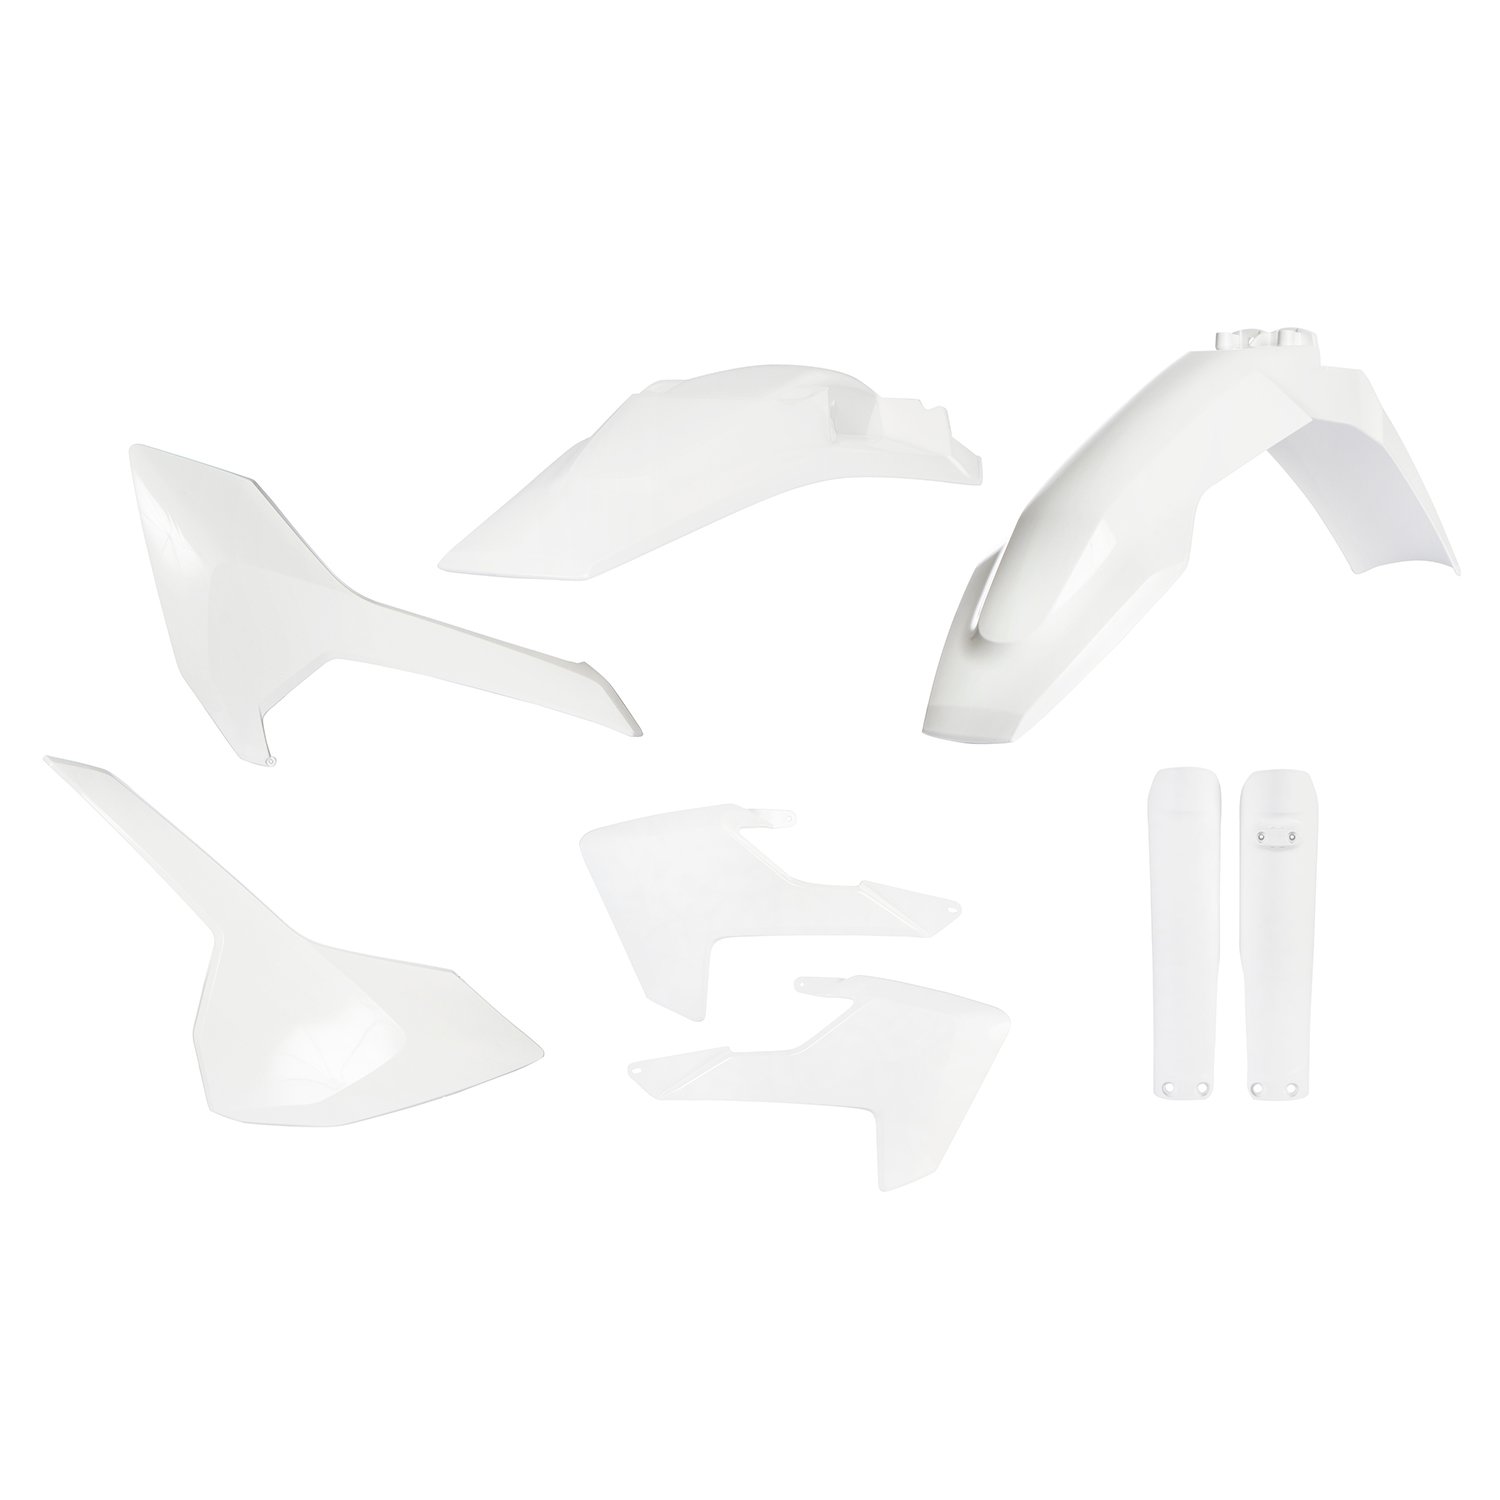 Acerbis Plastic Kit Full-Kit Husqvarna TE 125/250/300, FE 250/350/450/501 17-19, White